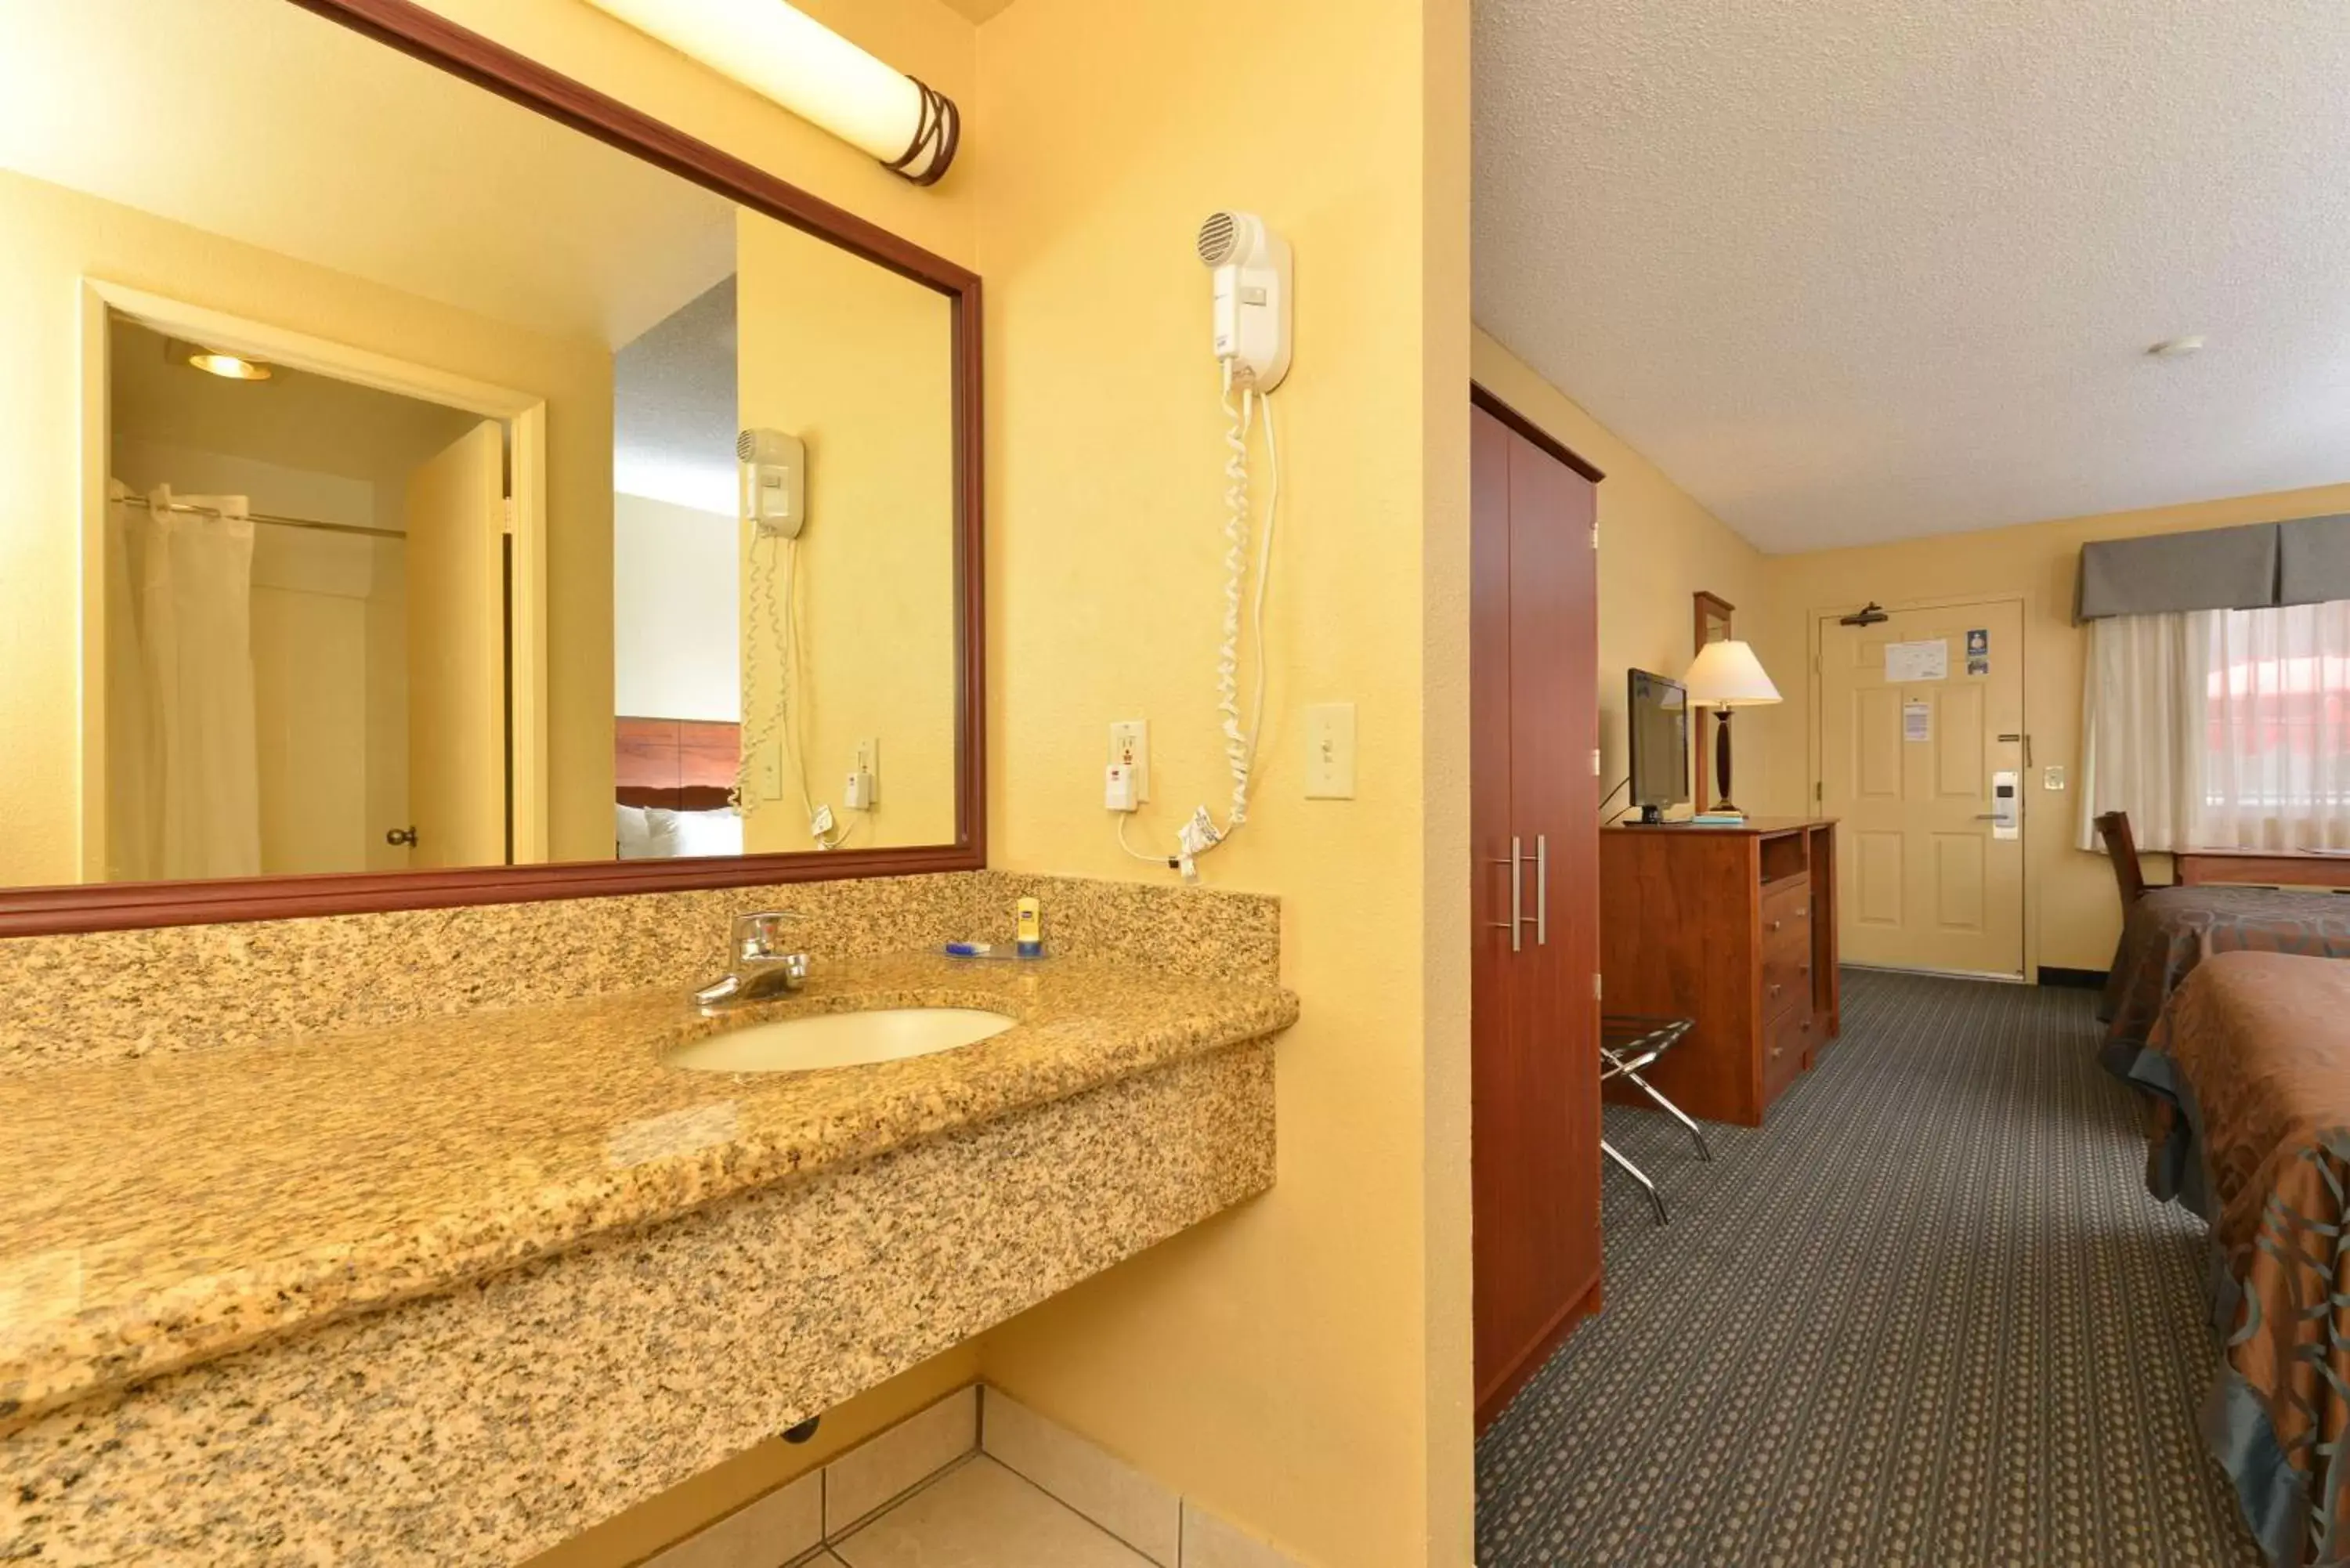 Bedroom, Bathroom in Best Western Santee Lodge